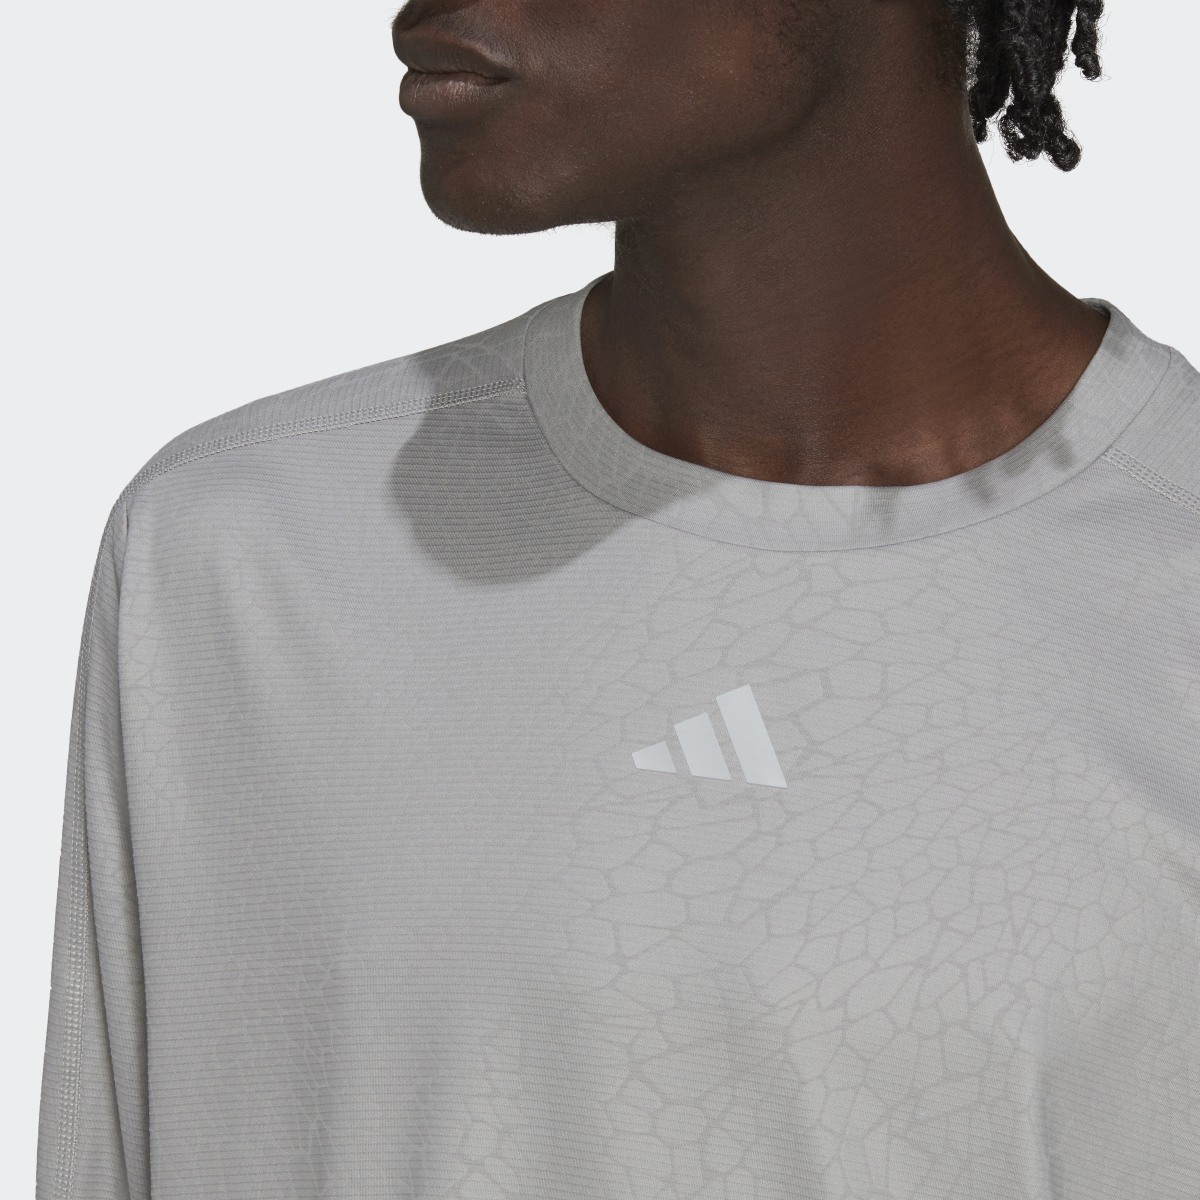 Adidas Workout PU Print Long-Sleeve Top. 9